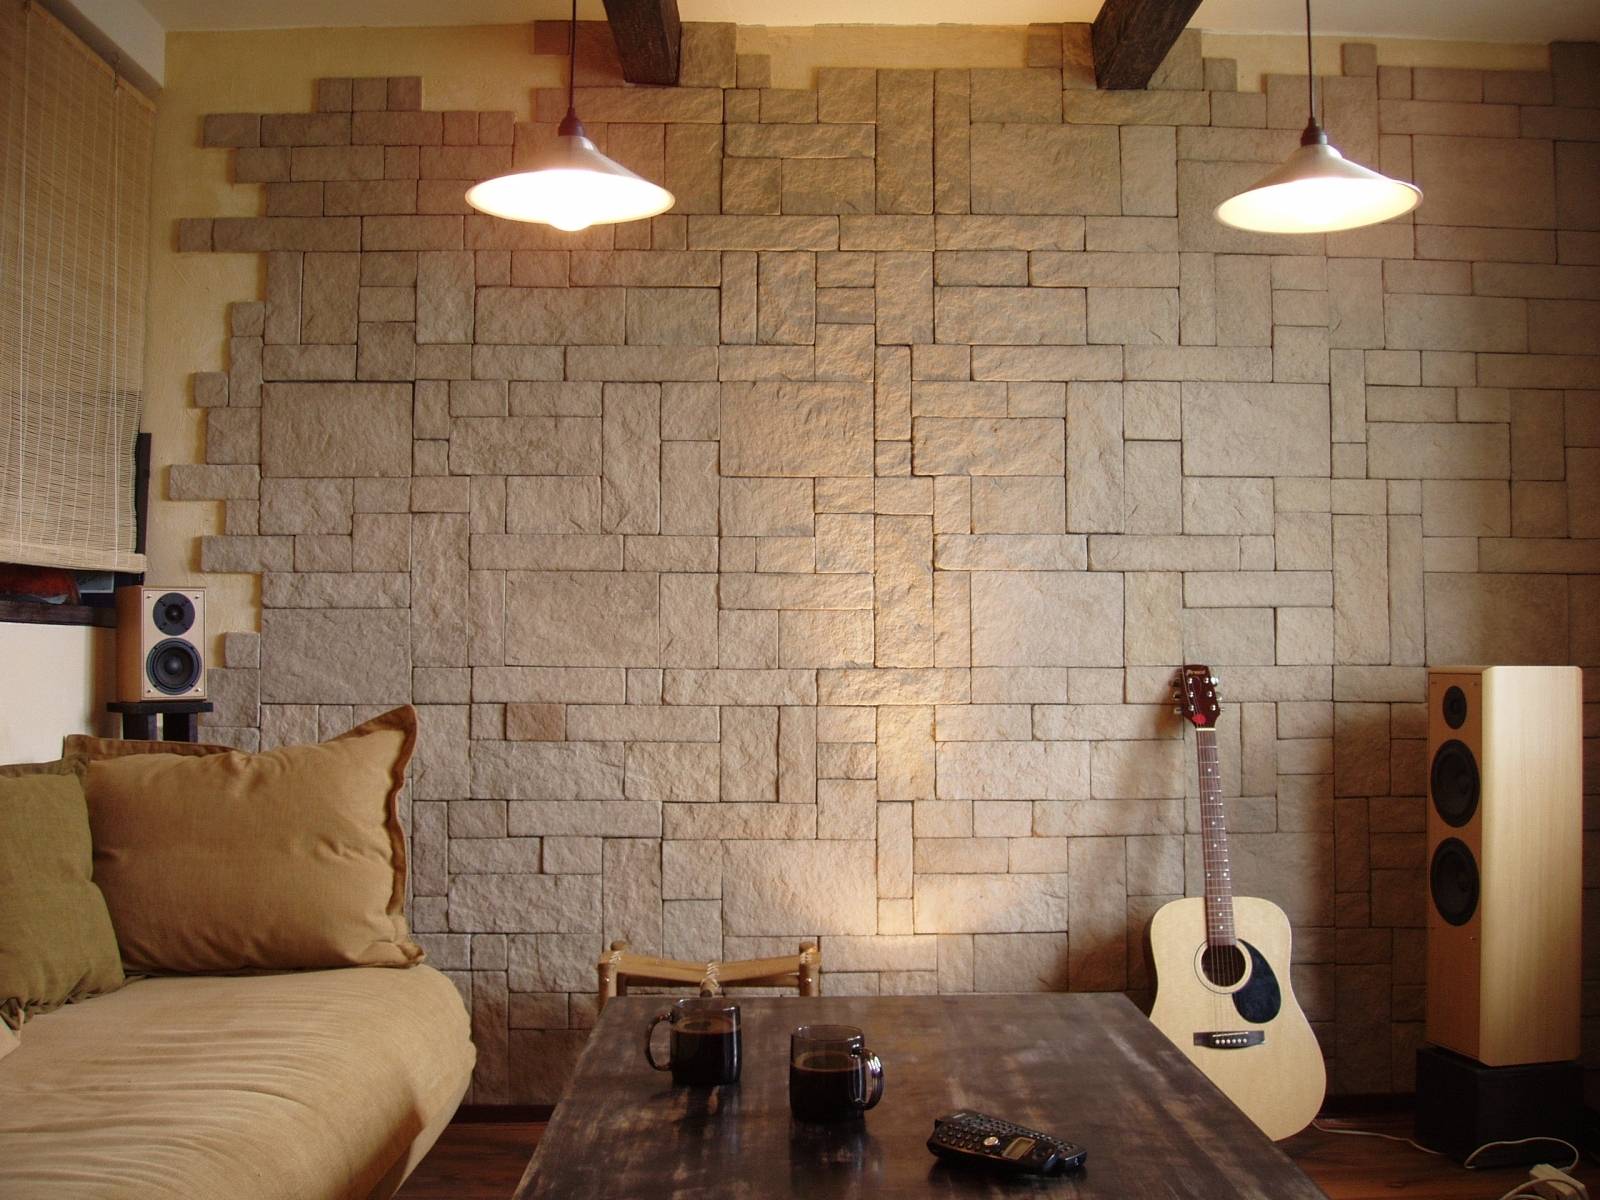 Декоративная плитка: гипсовая для внутренней отделки, облицовочный дикий камень для квартиры, каменная на стены, кирпич леруа мерлен